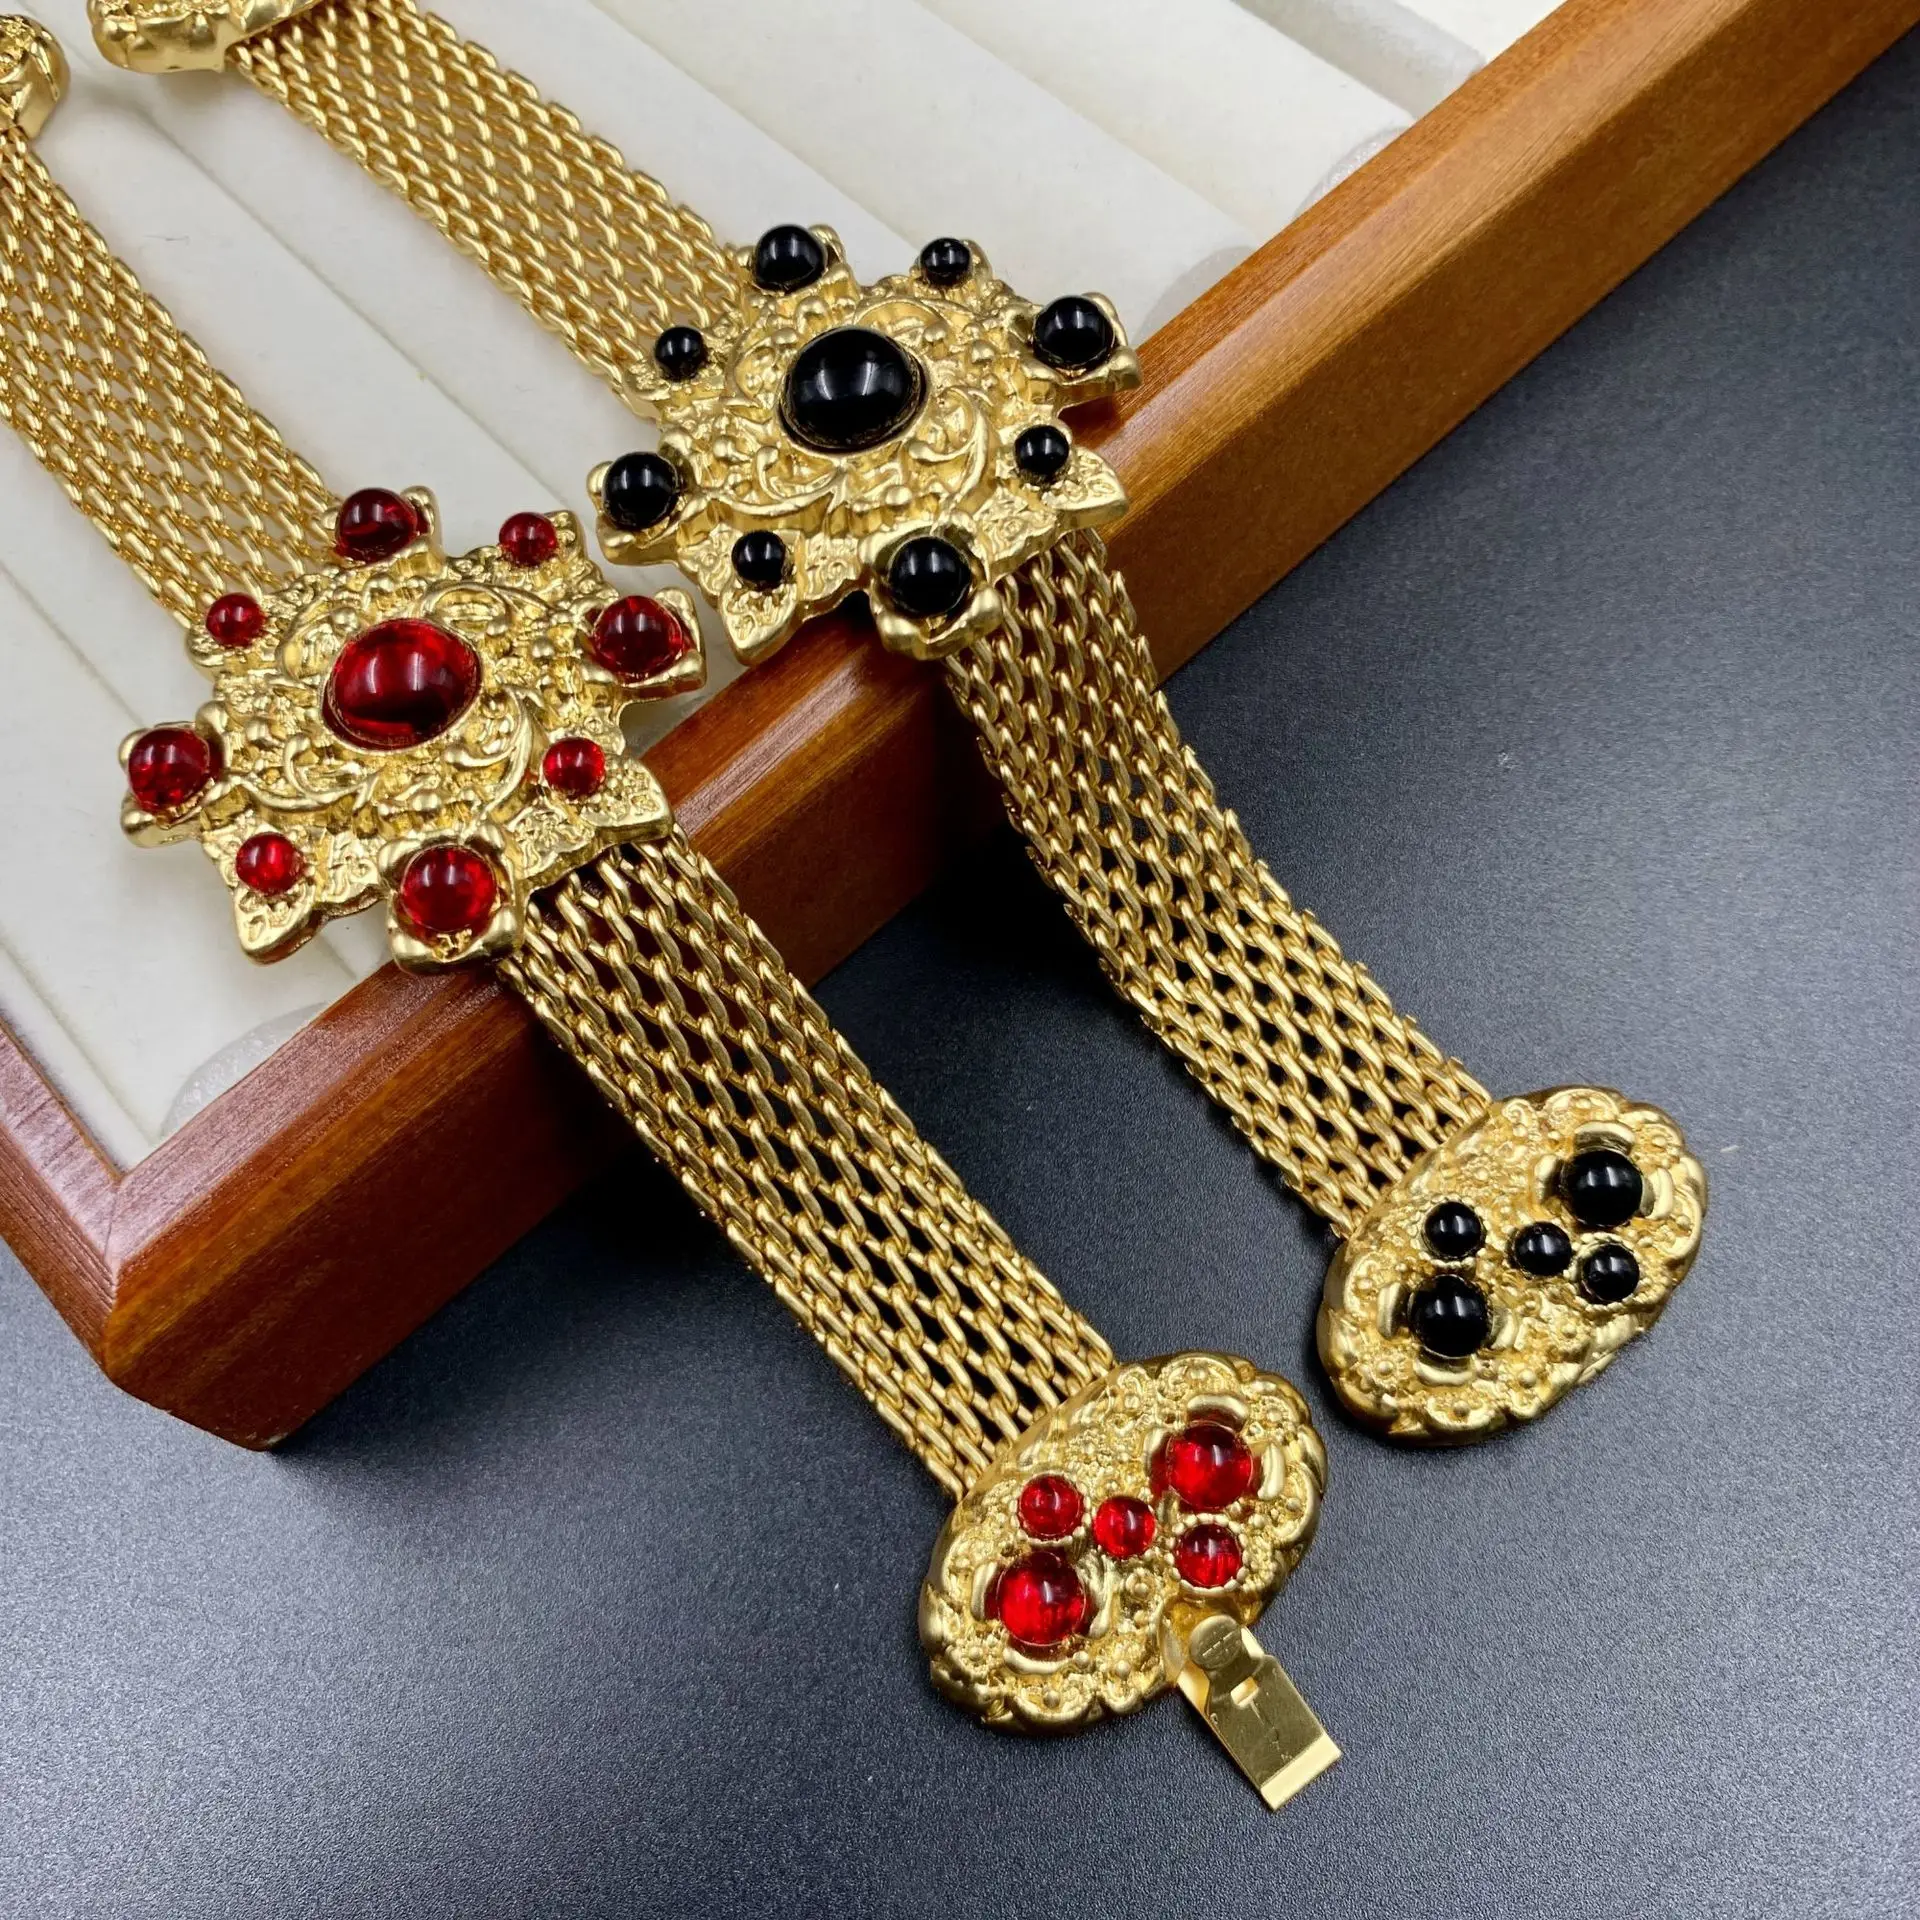 

Элегантный женский браслет из красного стекла в винтажном стиле с большим цветком